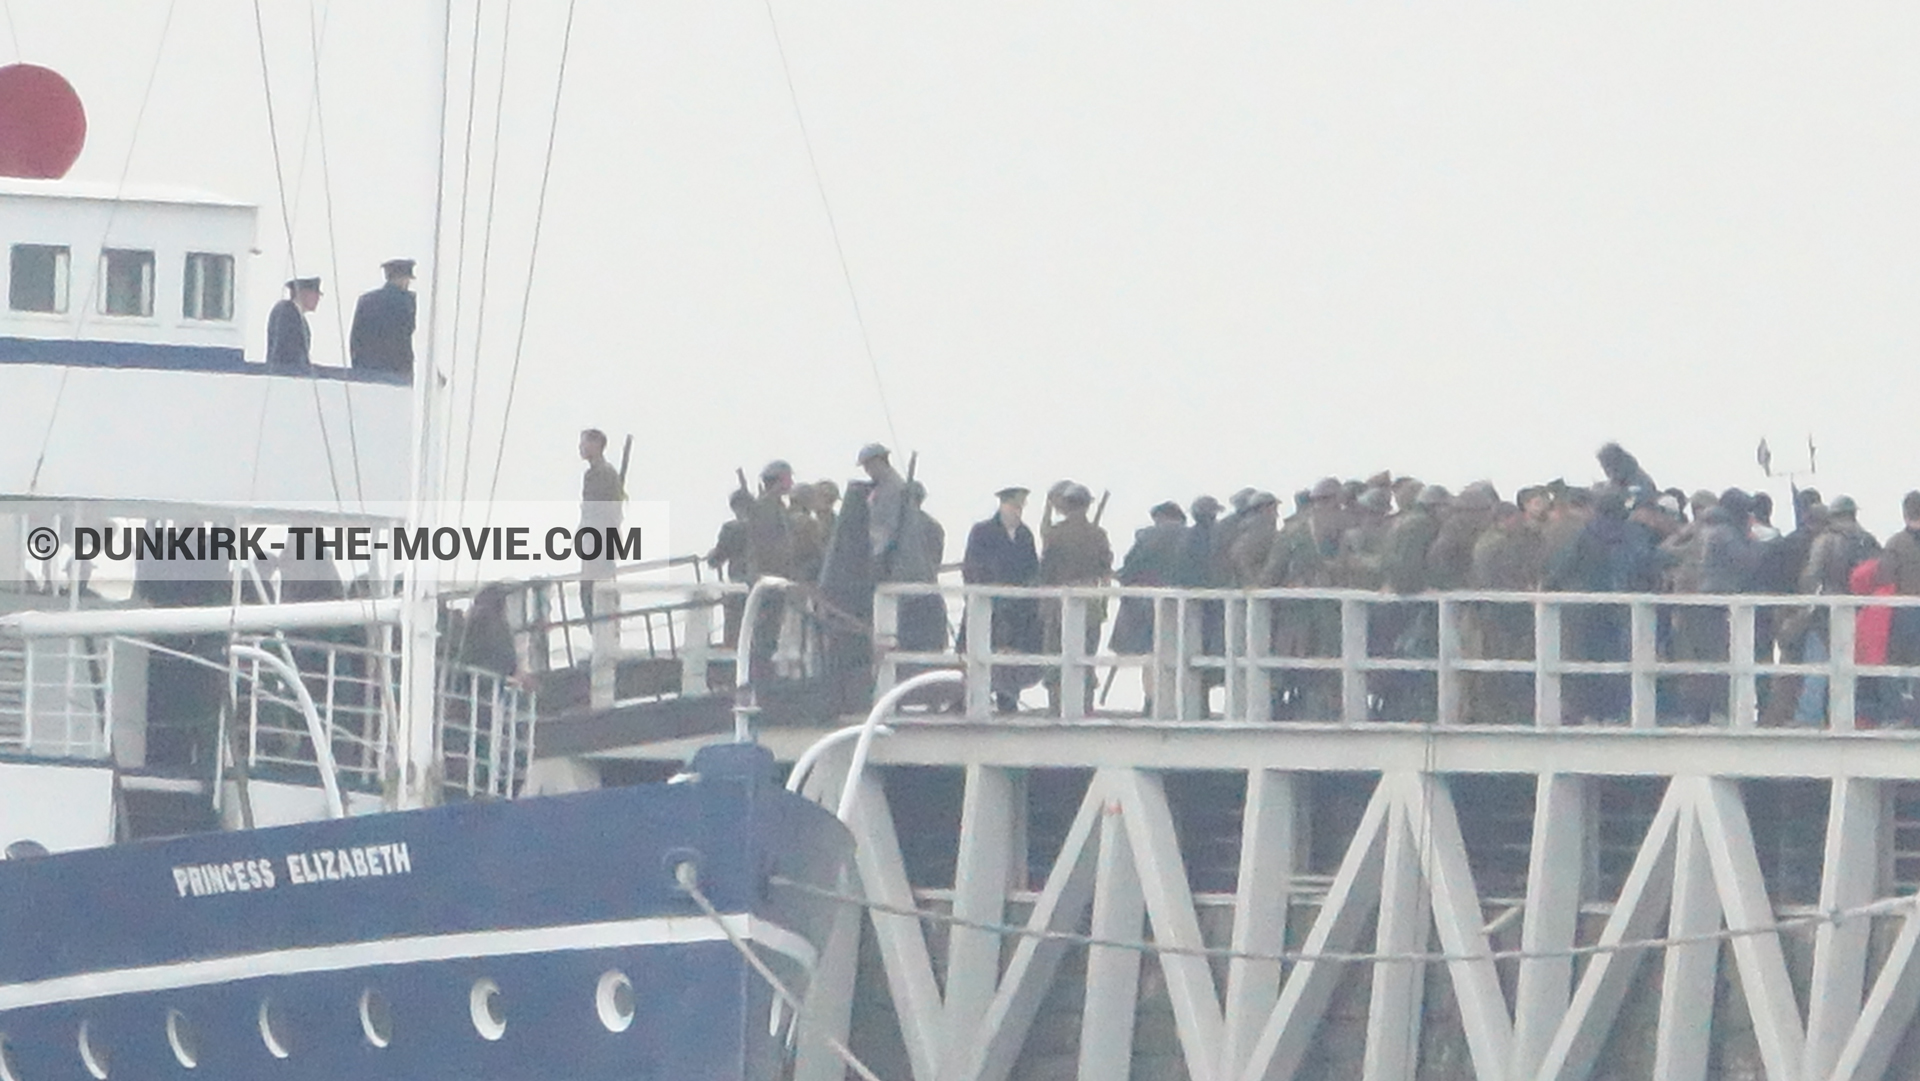 Fotos con cielo gris, extras, muelle del ESTE, Kenneth Branagh, Princess Elizabeth,  durante el rodaje de la película Dunkerque de Nolan